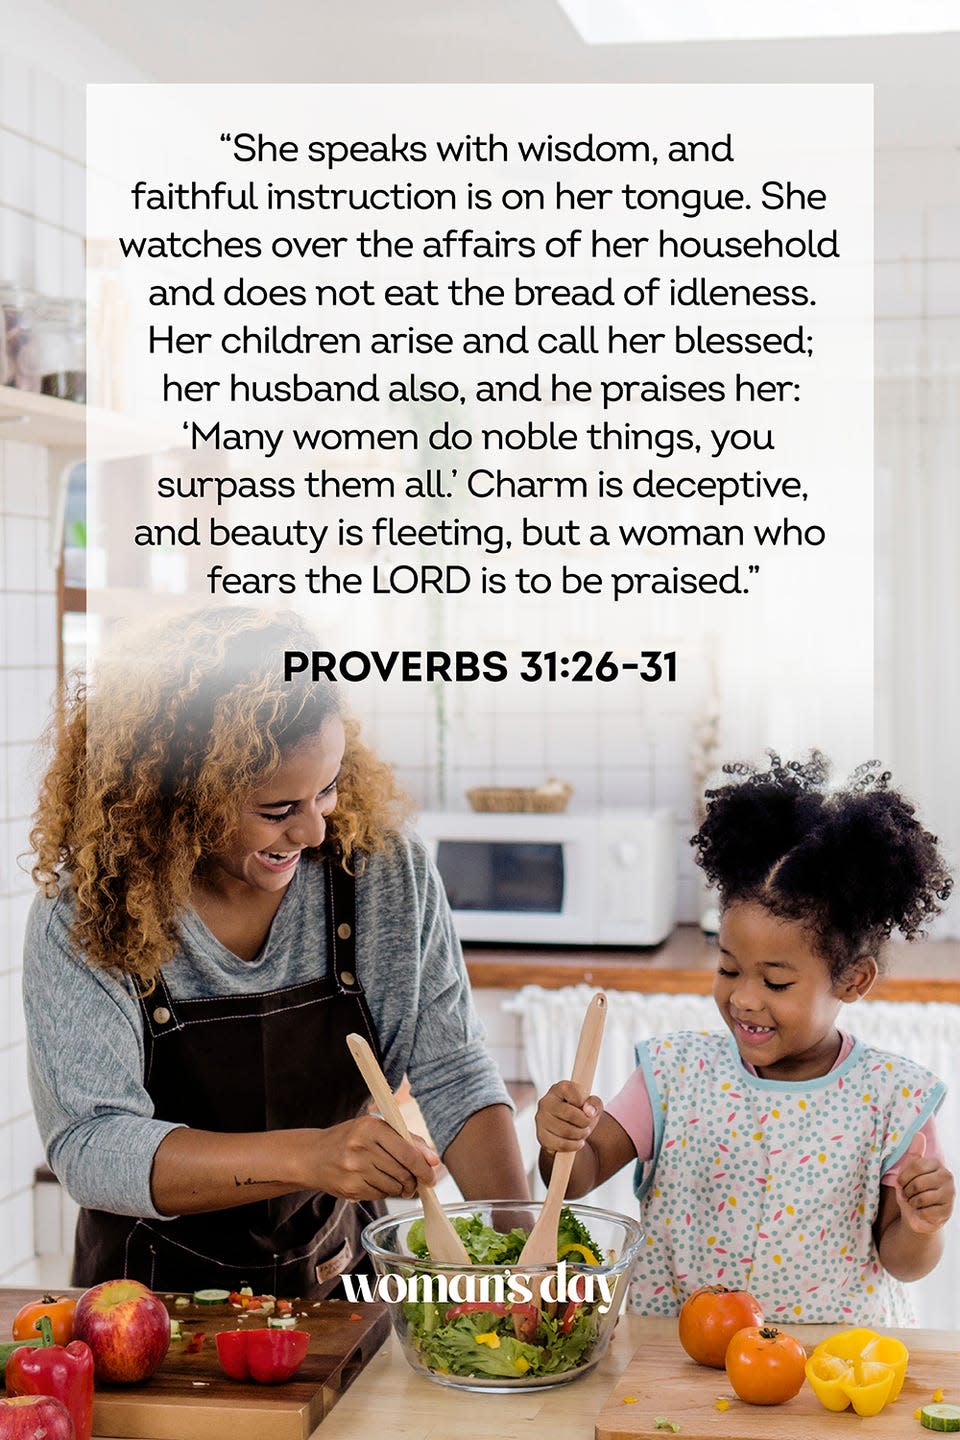 24) Proverbs 31:26-31